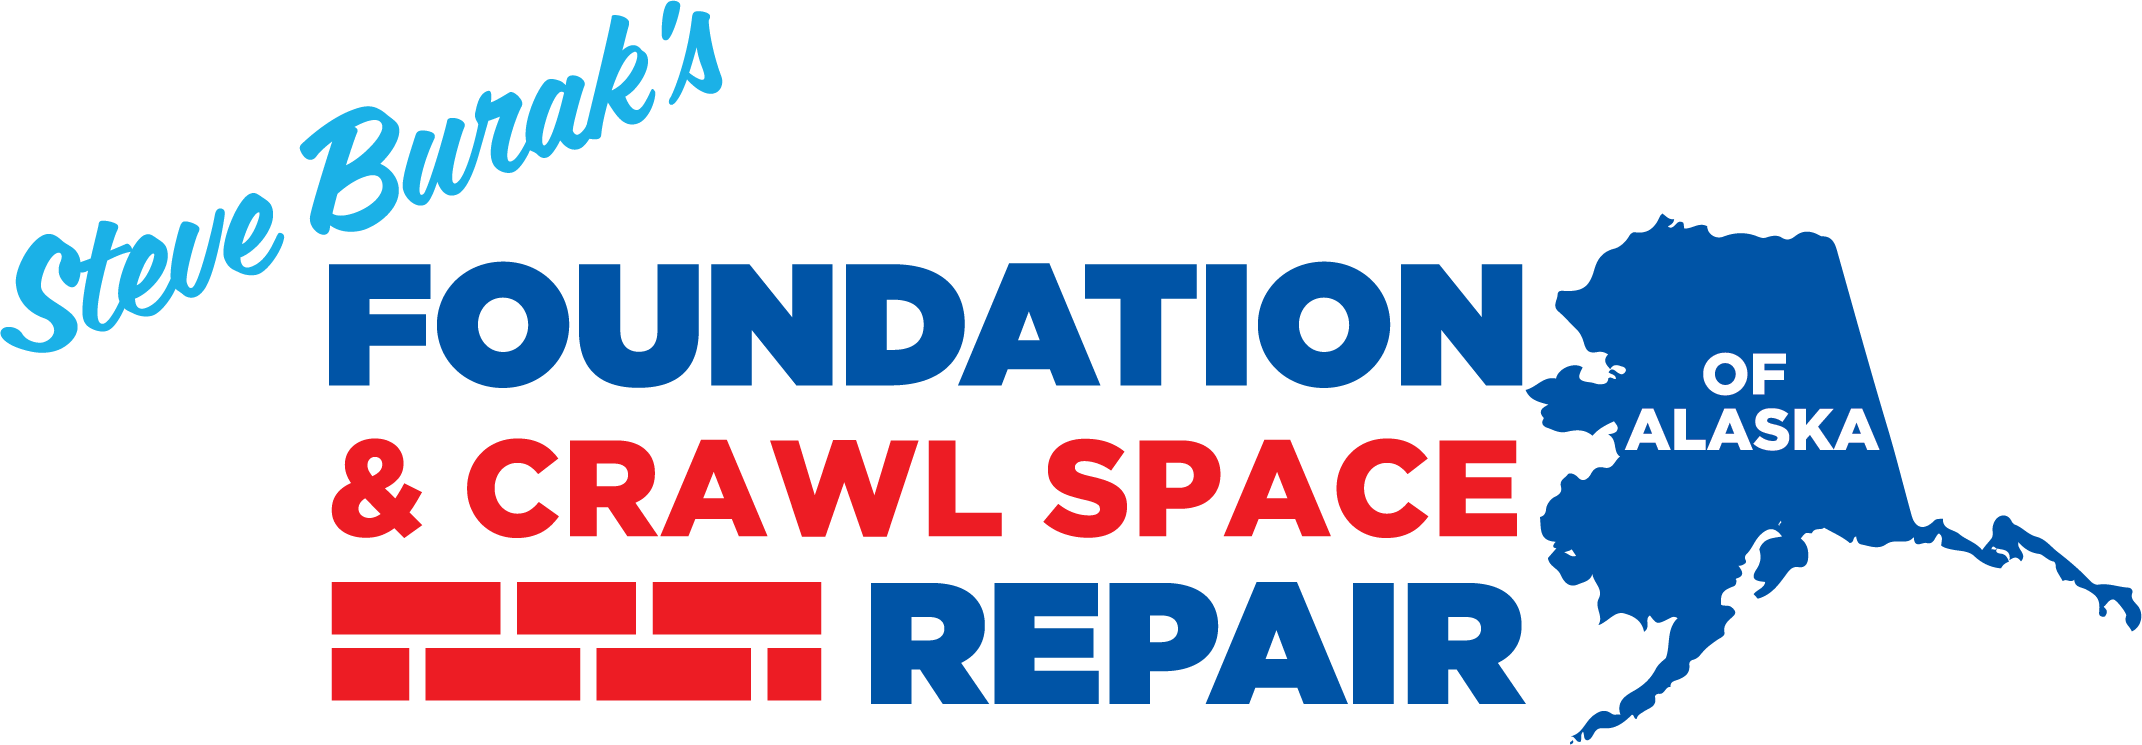 Foundation and Crawl Space Repair of Alaska Logo